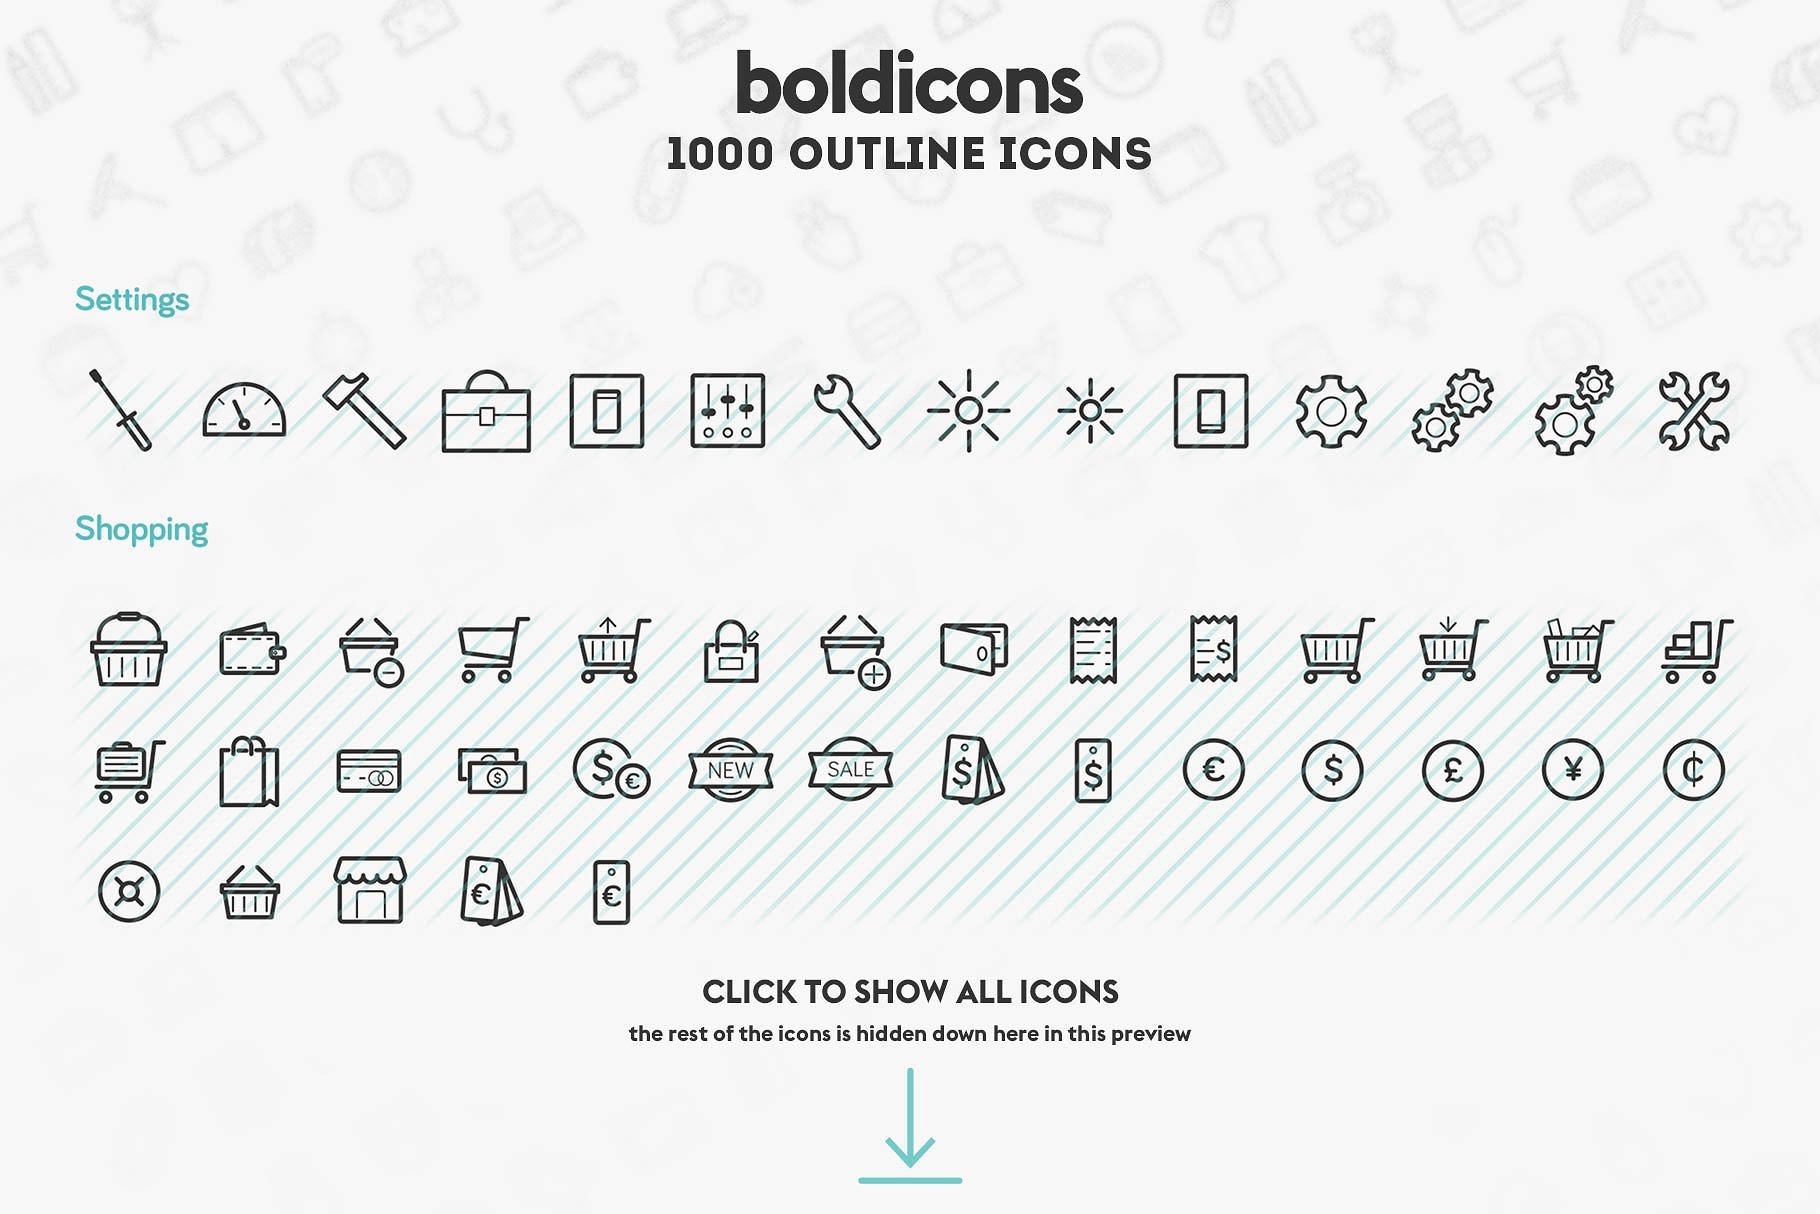 常用的描边图标 Boldicons – 1000 outli